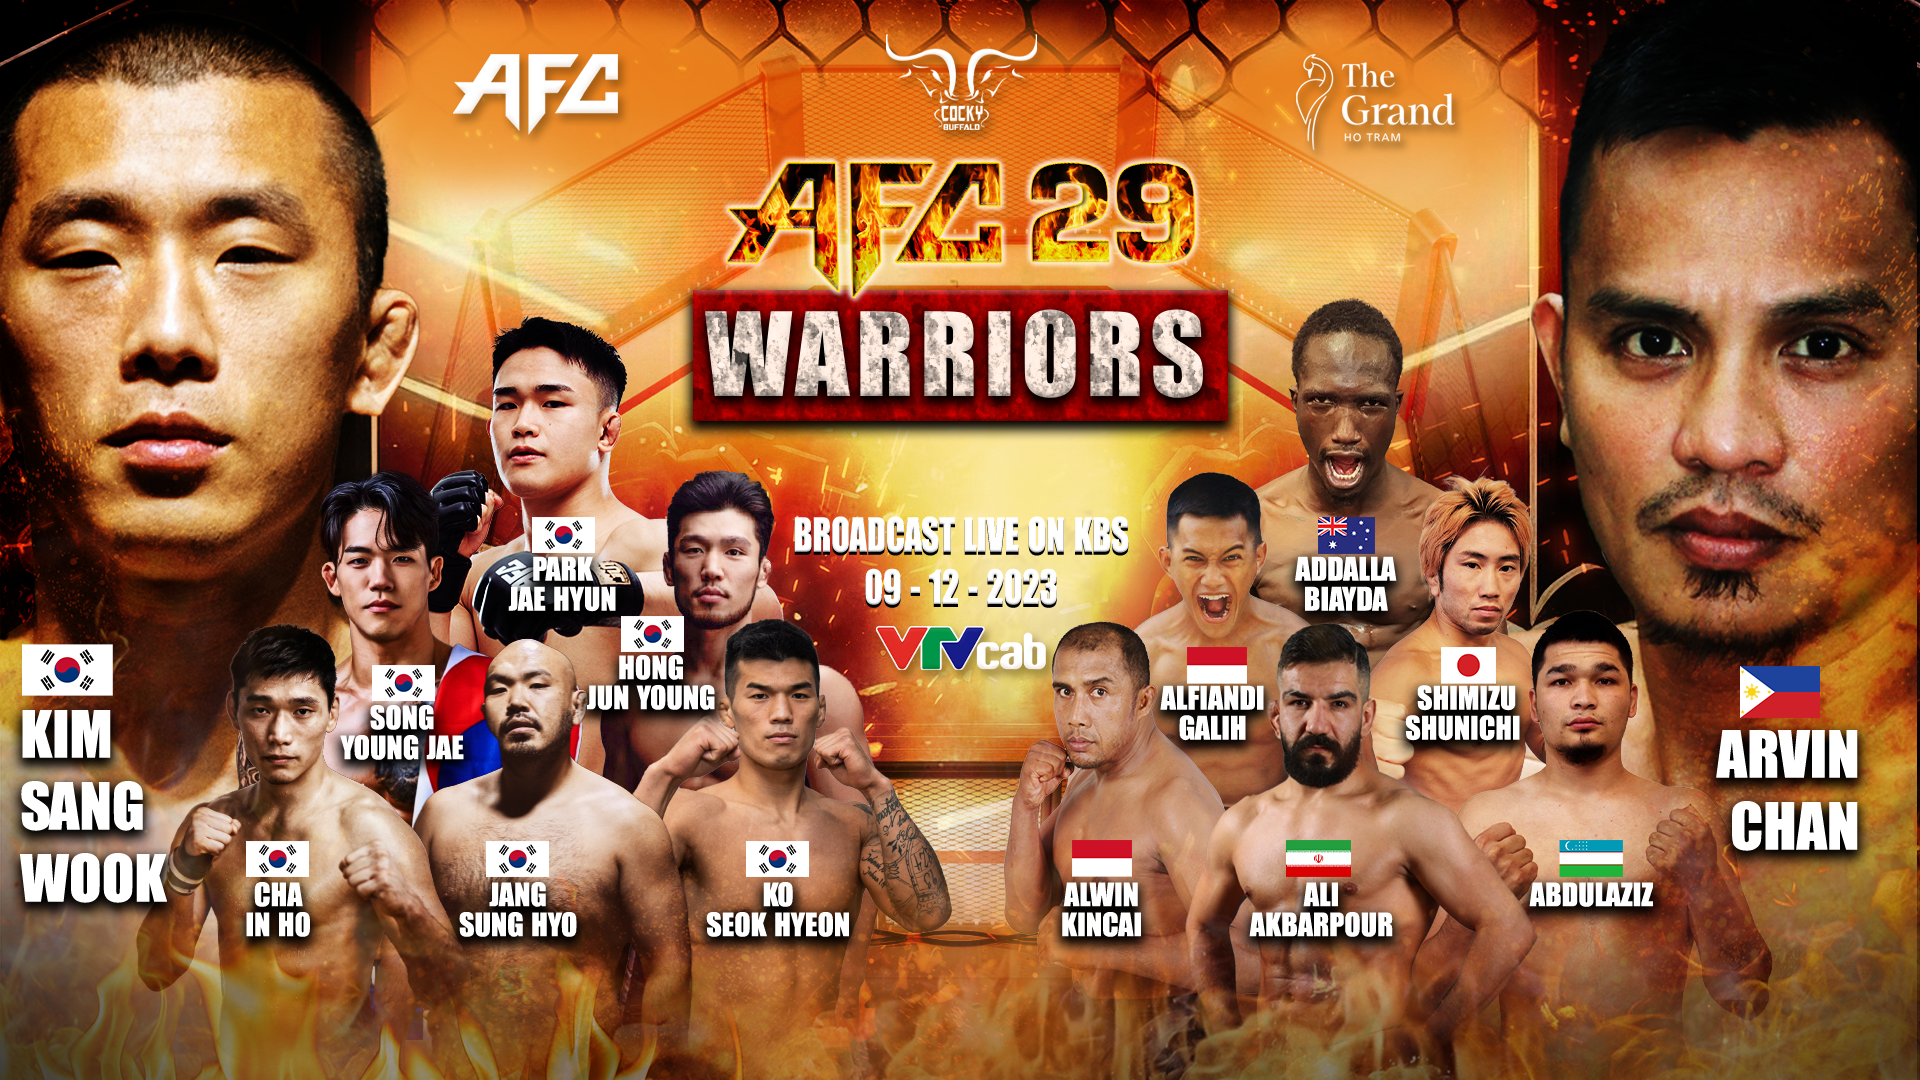 Sự kiện võ thuật MMA AFC 29 gây “sốt” với những cặp đấu siêu hấp dẫn - Ảnh 1.